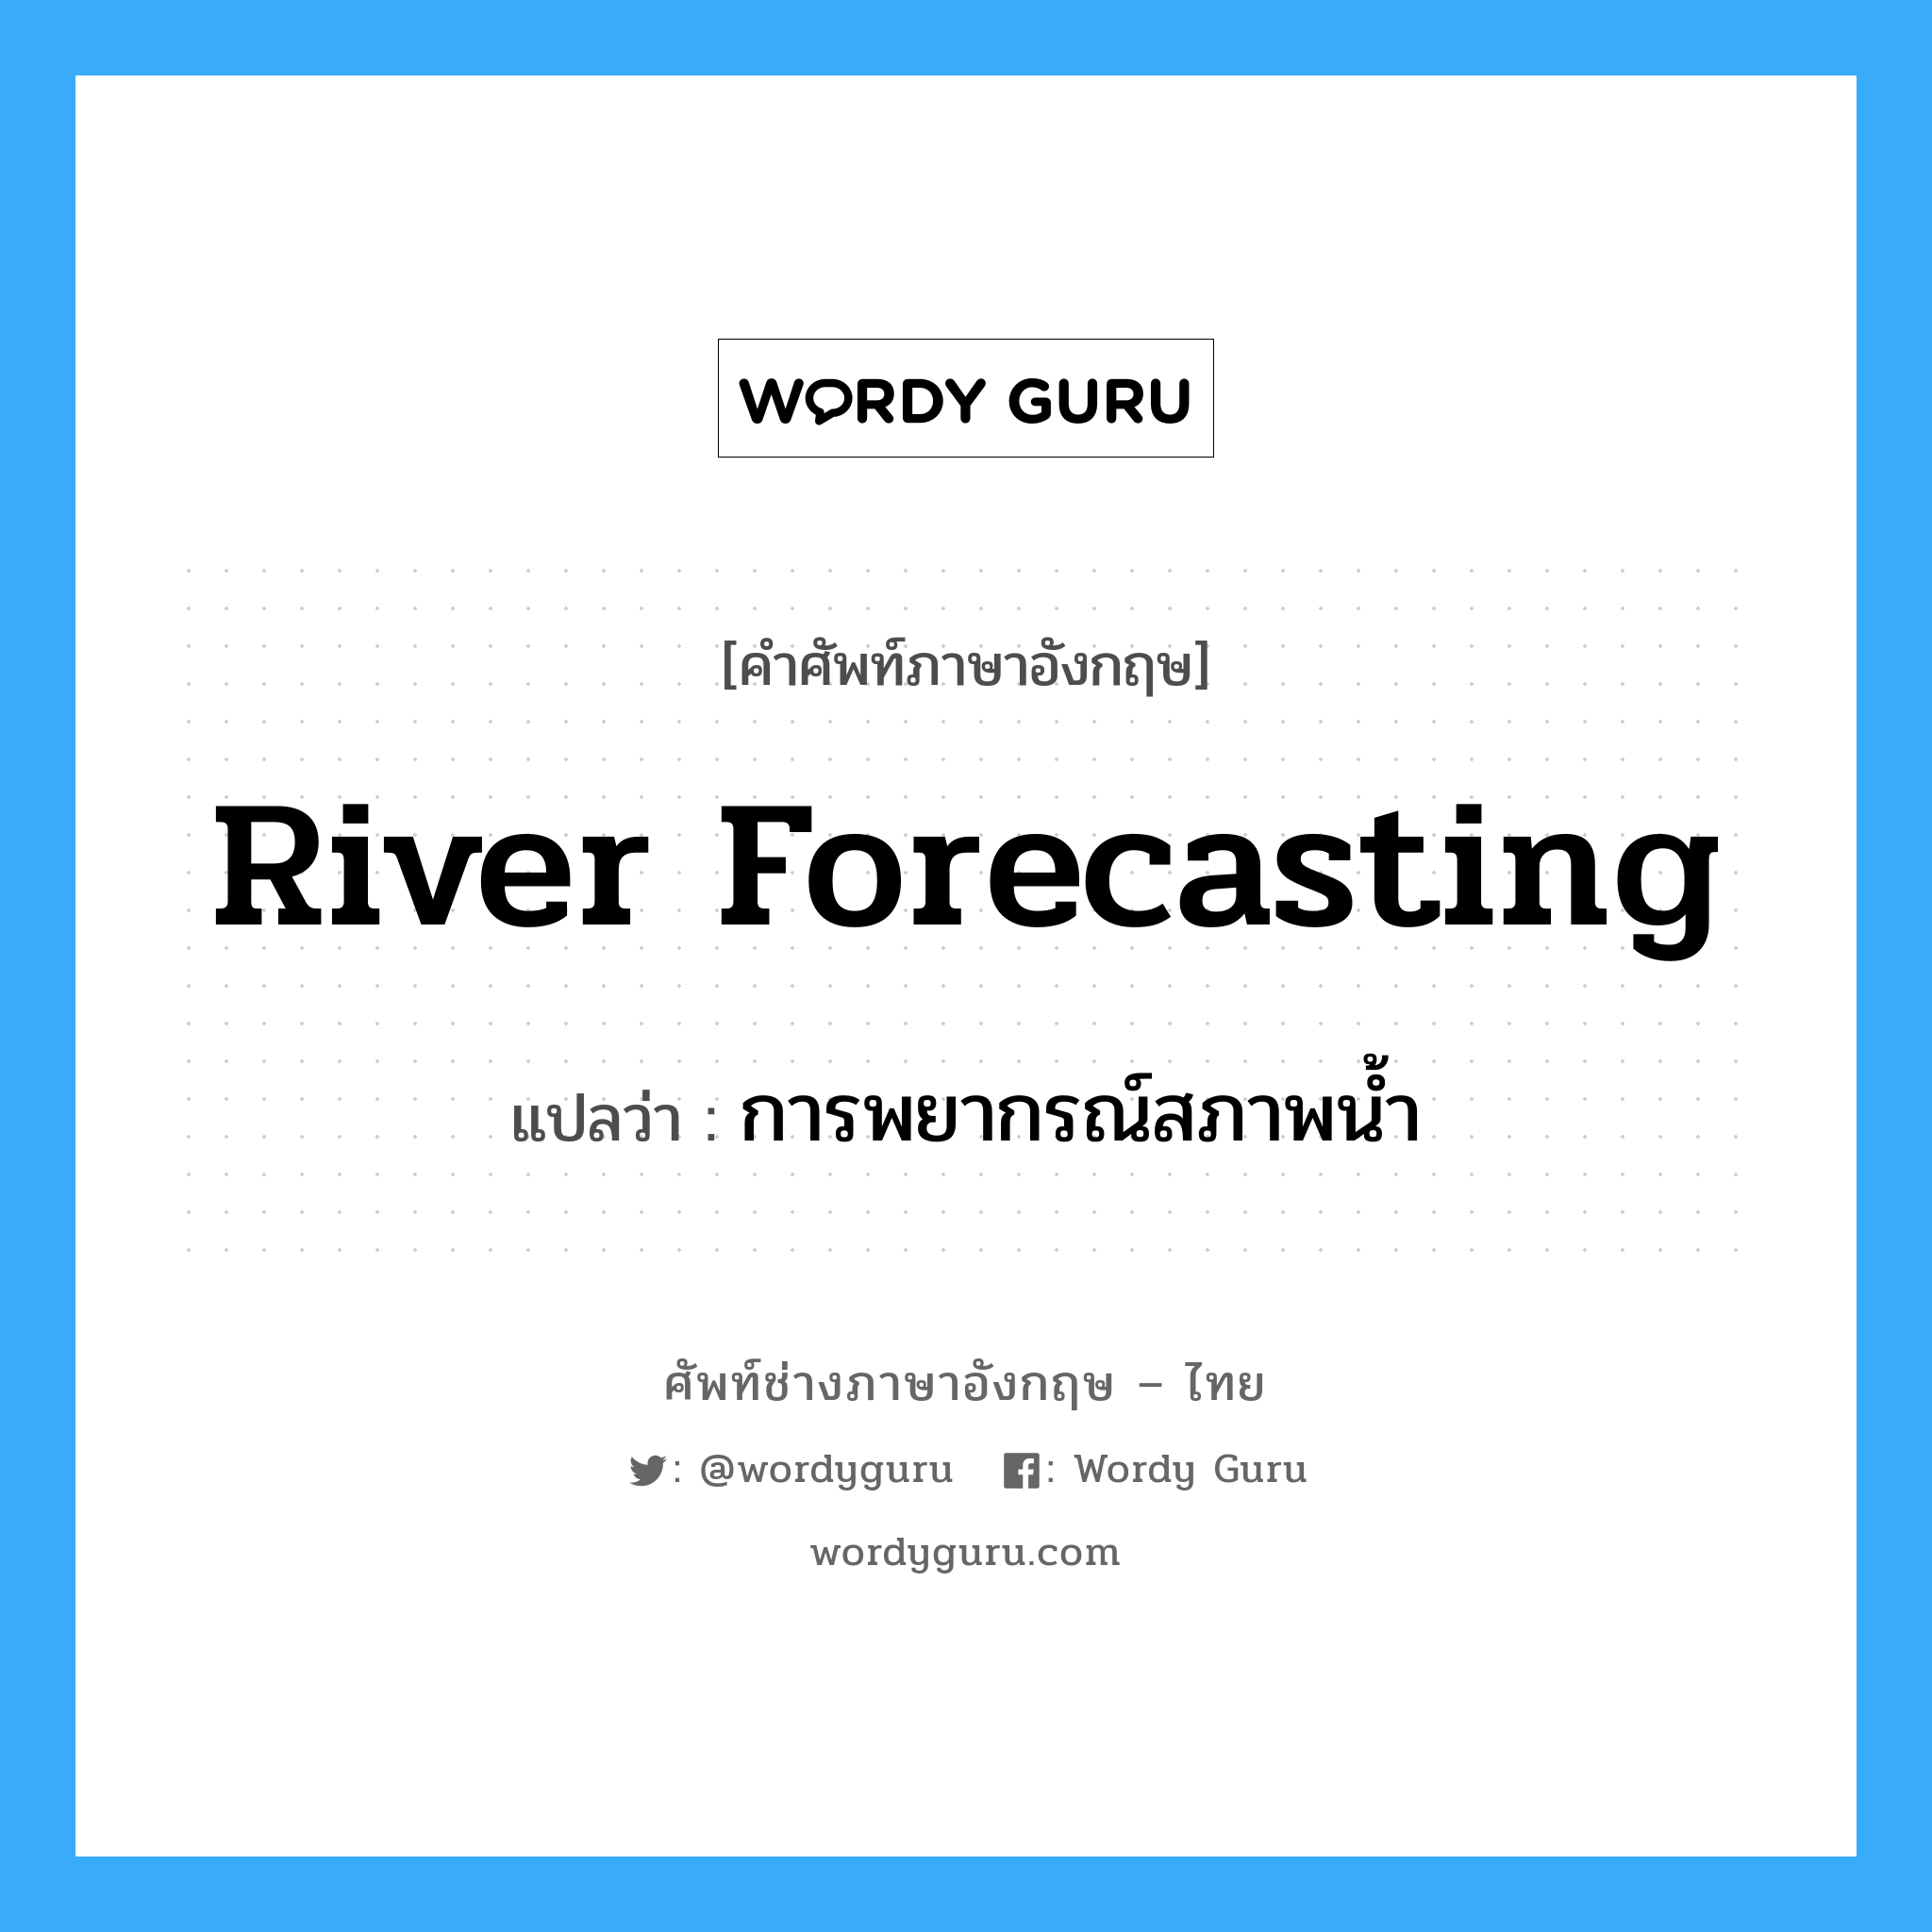 การพยากรณ์สภาพน้ำ ภาษาอังกฤษ?, คำศัพท์ช่างภาษาอังกฤษ - ไทย การพยากรณ์สภาพน้ำ คำศัพท์ภาษาอังกฤษ การพยากรณ์สภาพน้ำ แปลว่า river forecasting